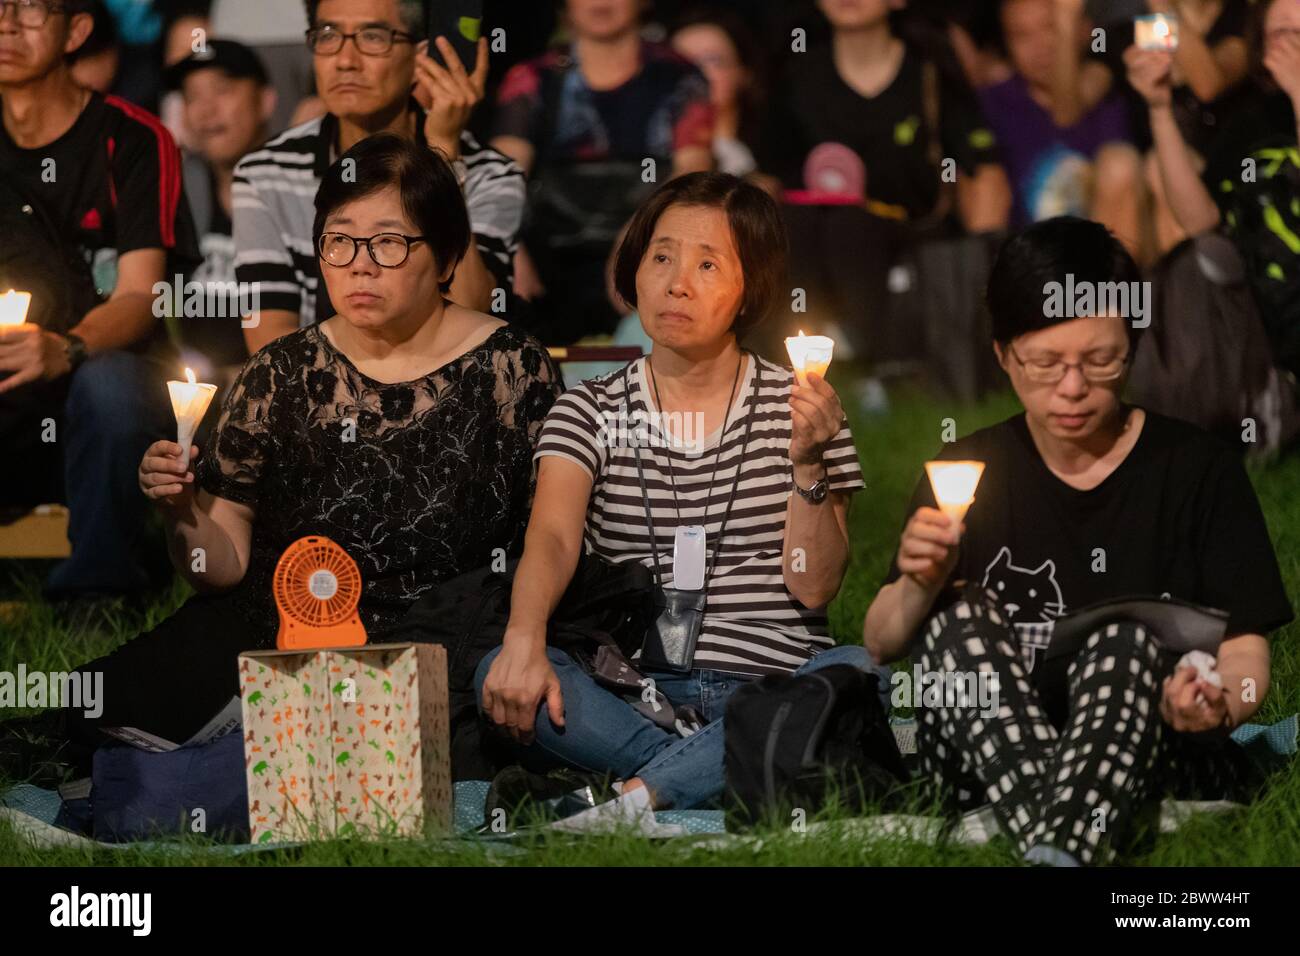 Los participantes de una Vigilia Masacre de la Plaza de Tiananmen en Hong Kong aparecen sombríos mientras escuchan los discursos en el escenario. 4 de junio de 2019 - Victoria Park, Hong Kong Foto de stock